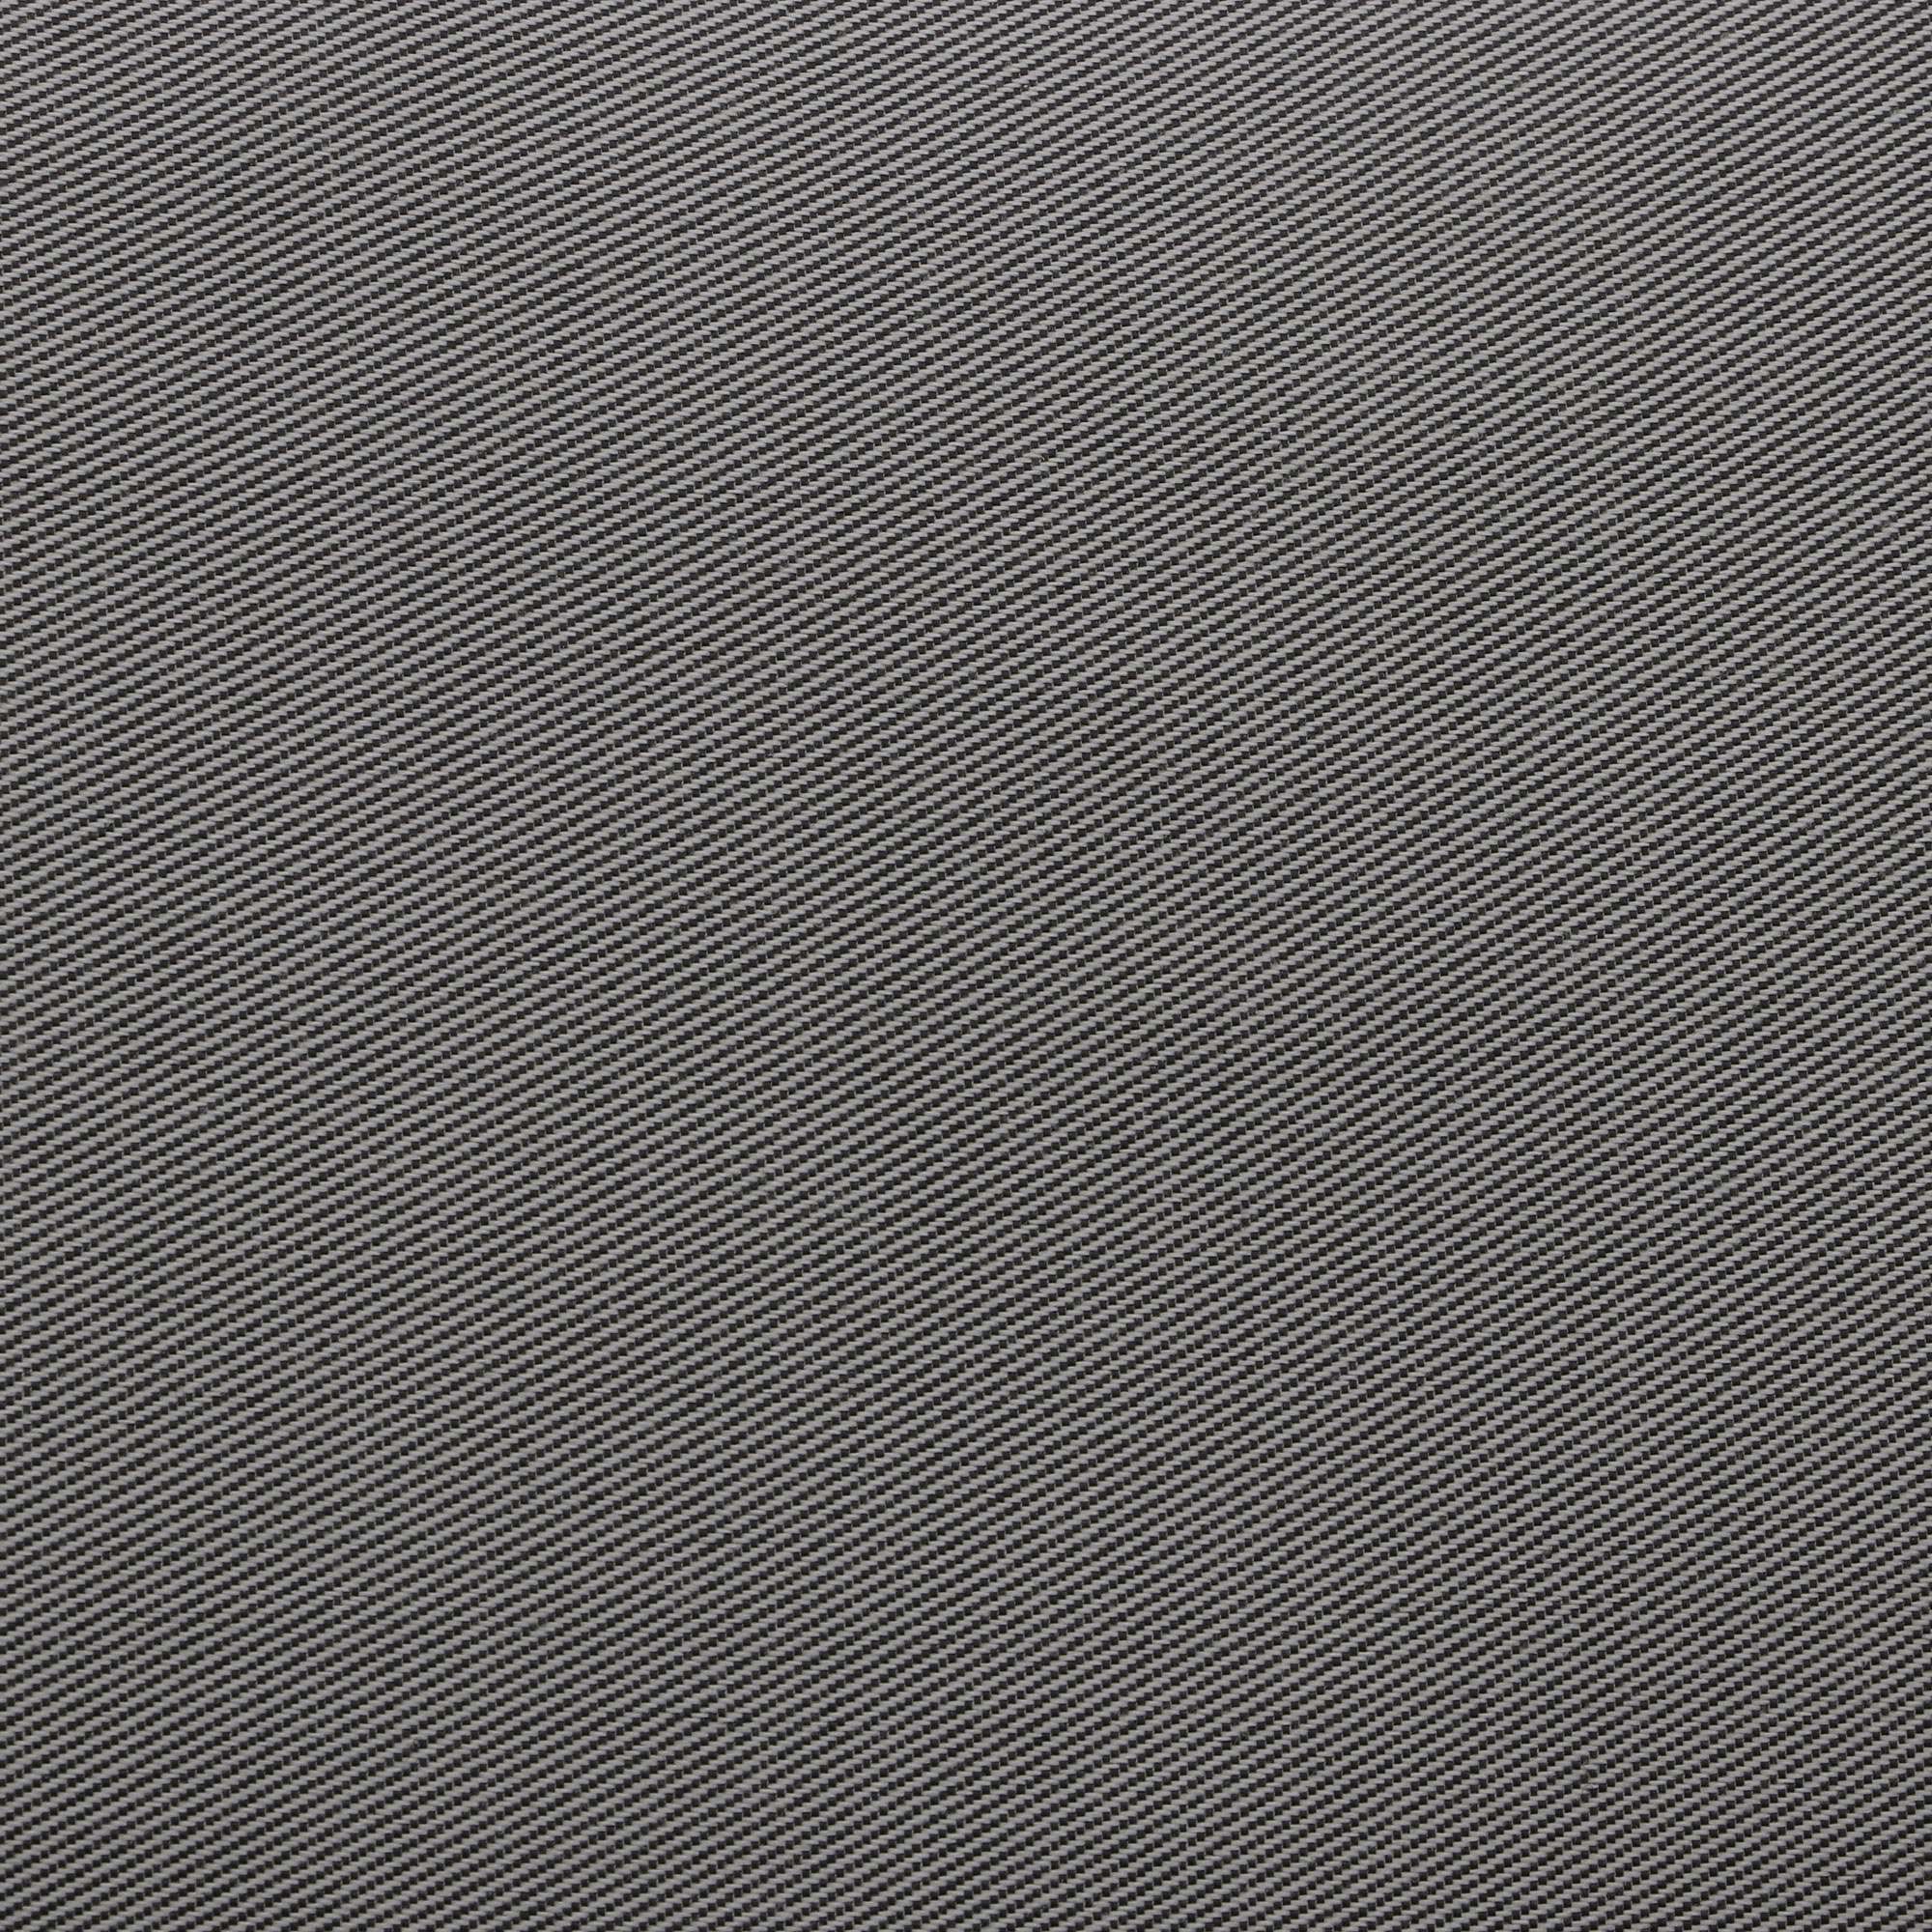 Комплект мебели Emek garden Toledo серый 4 предмета, цвет антрацитовый, размер 170х80х90 - фото 15